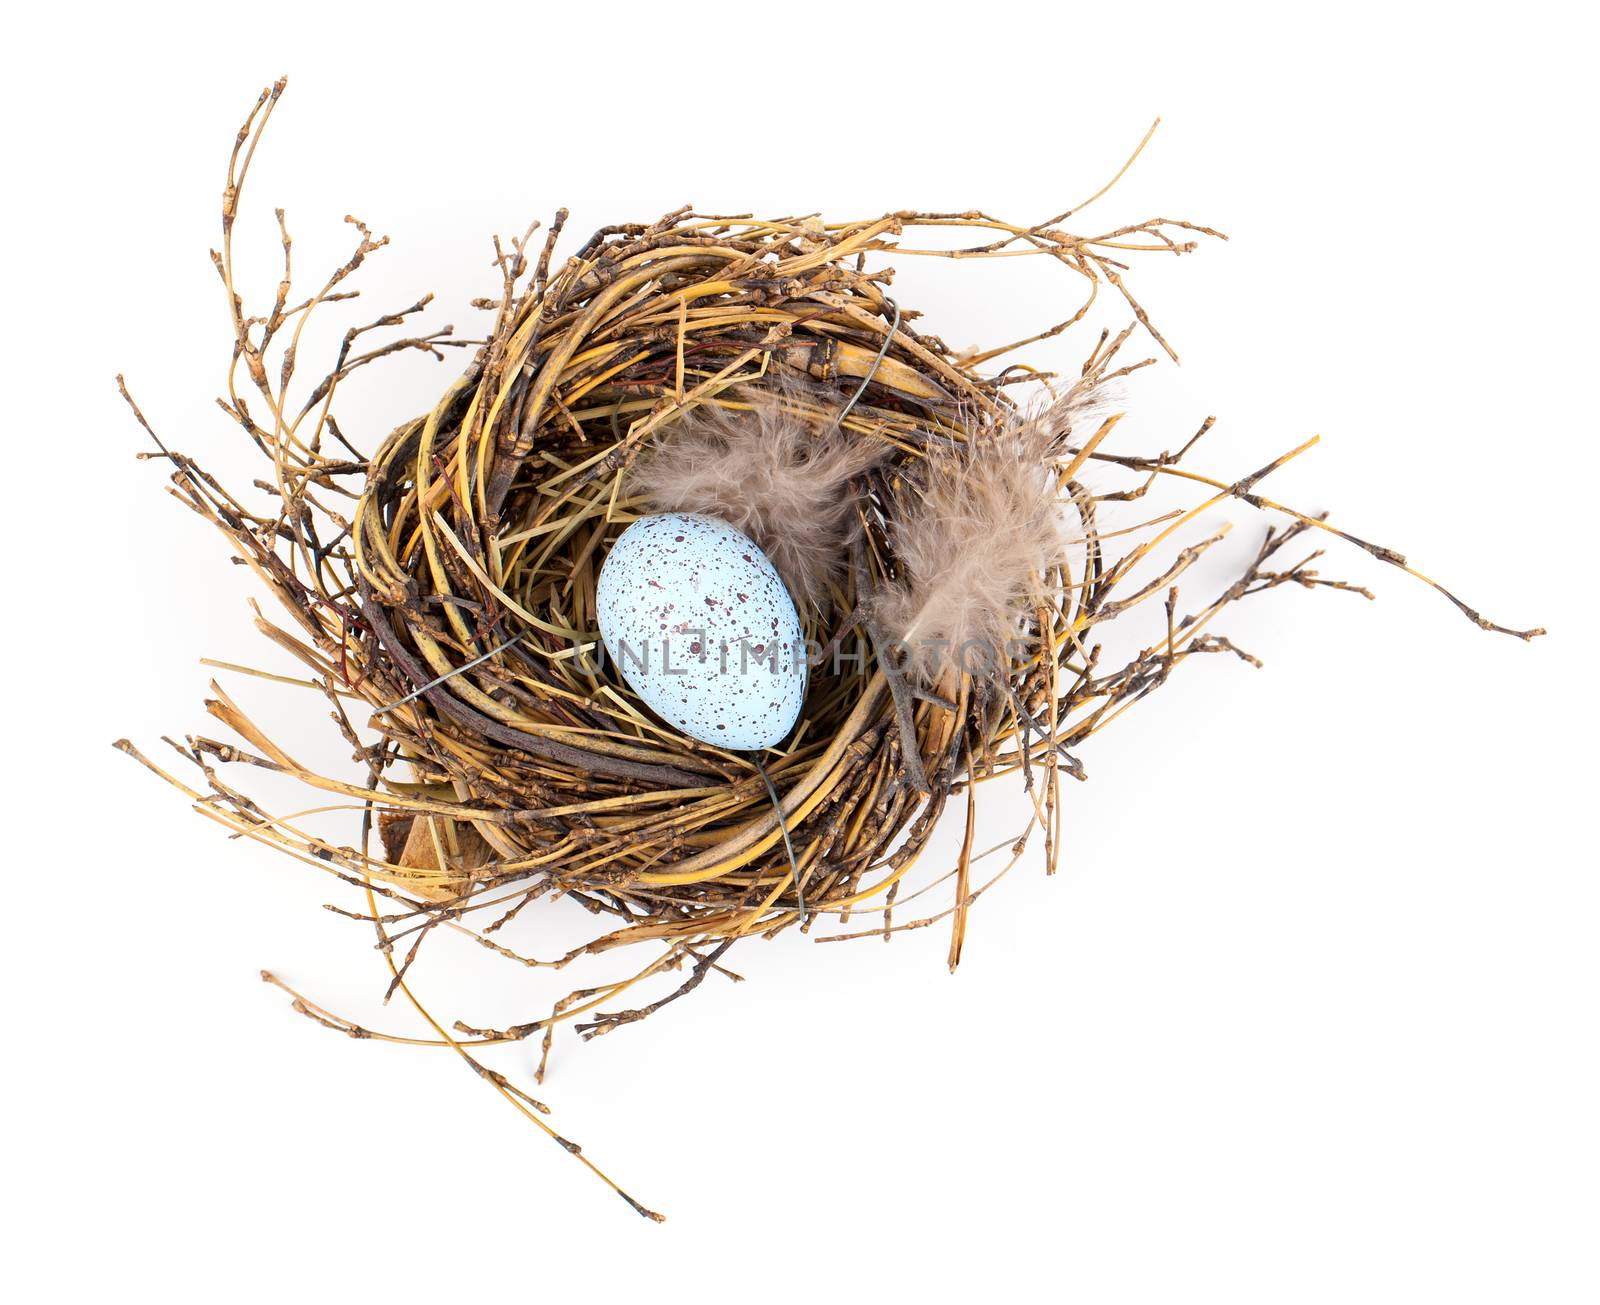 Easter egg in birds nest isolated on white background by motorolka